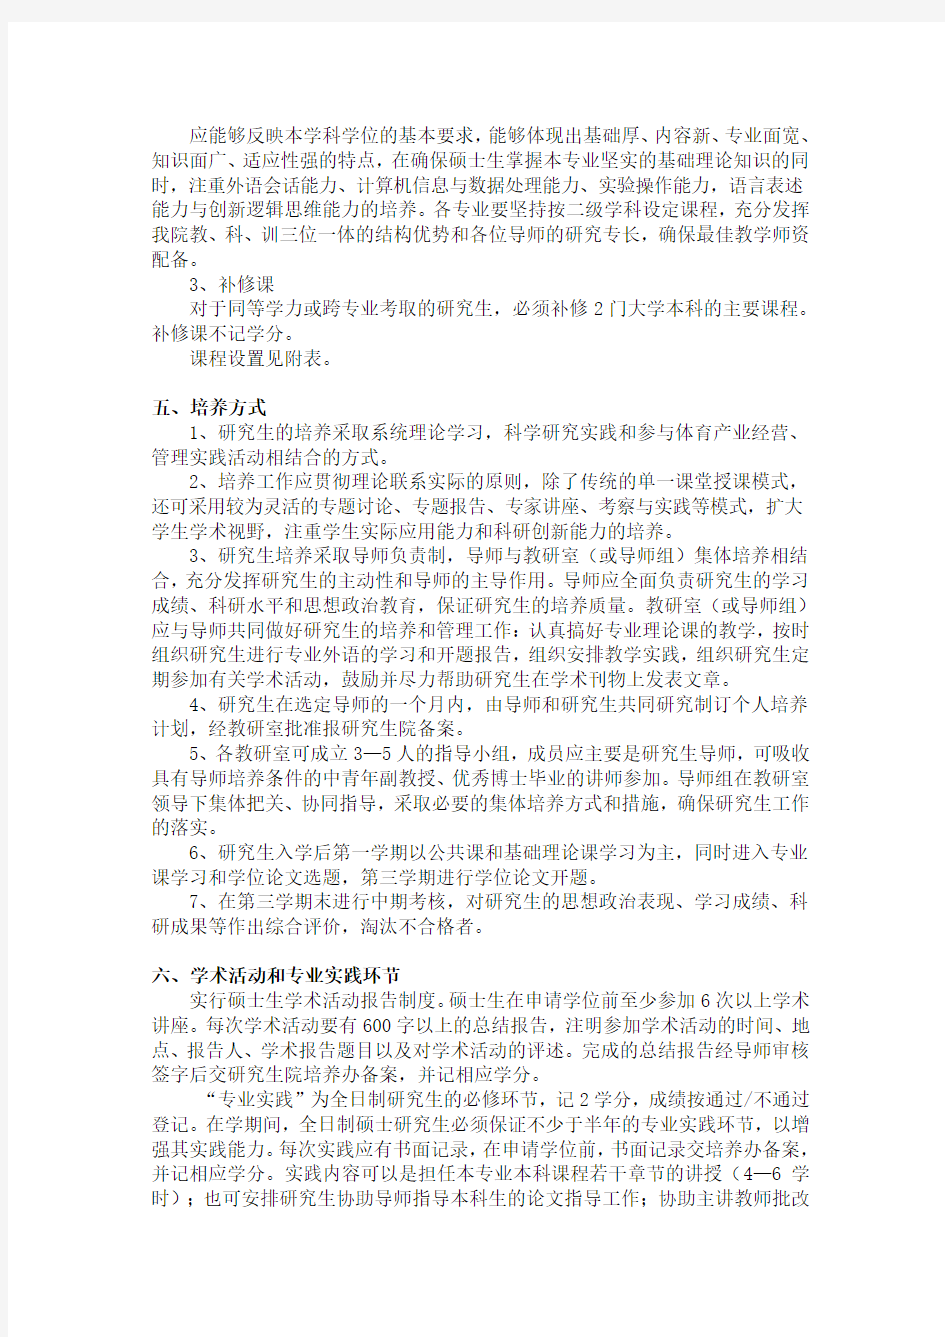 4-----武汉体育学院产业经济学硕士研究生培养方案(020205)